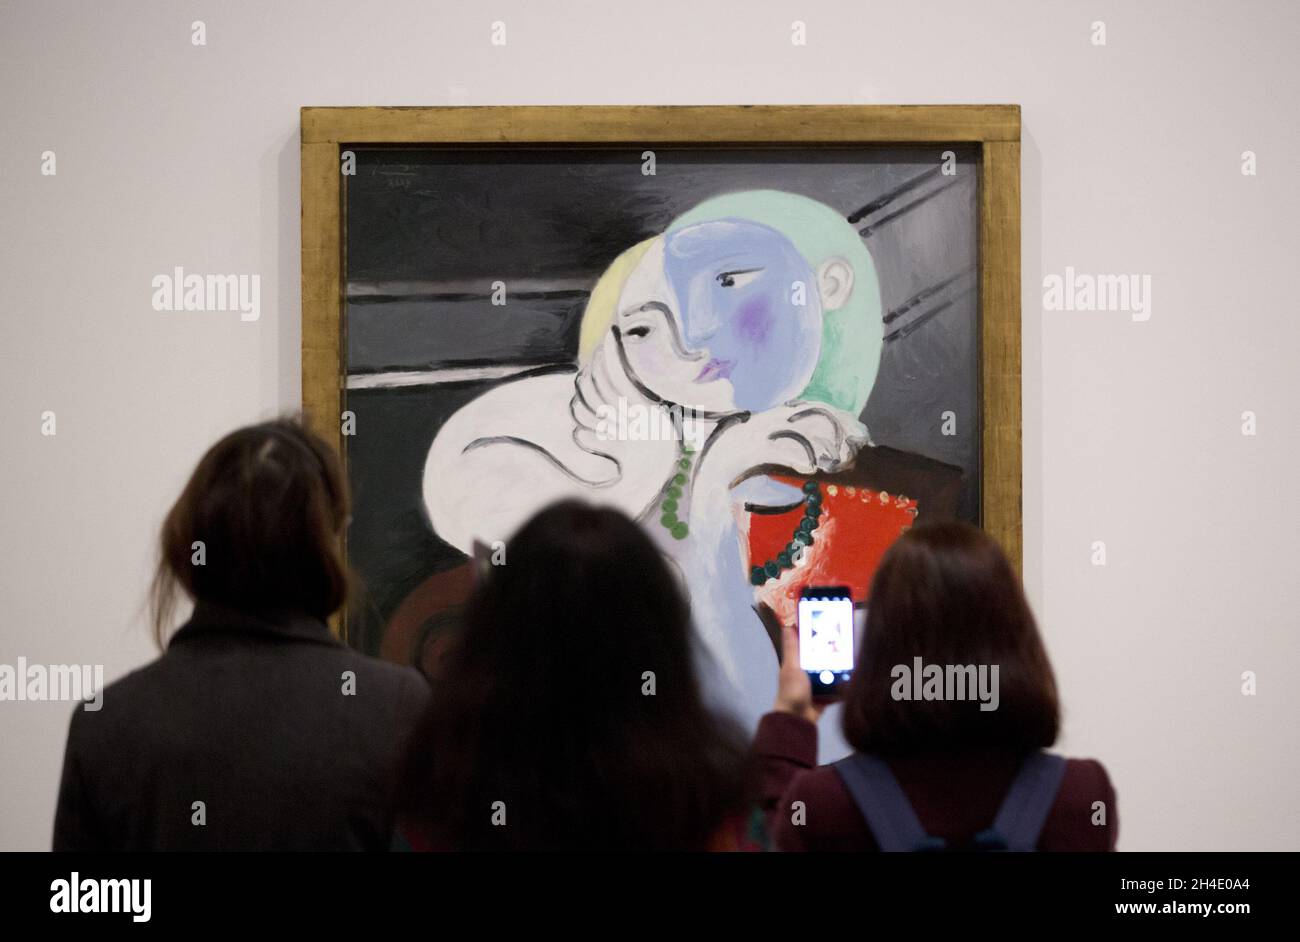 Personnes regardant la fille avant un miroir de Pablo Picasso, 1932, pendant un aperçu de l'exposition Picasso 1932 - Amour, gloire, tragédie à Tate Modern à Londres.Photo datée du mardi 6 mars 2018.Crédit photo devrait se lire: Isabel Infantes / EMPICS Entertainment. Banque D'Images